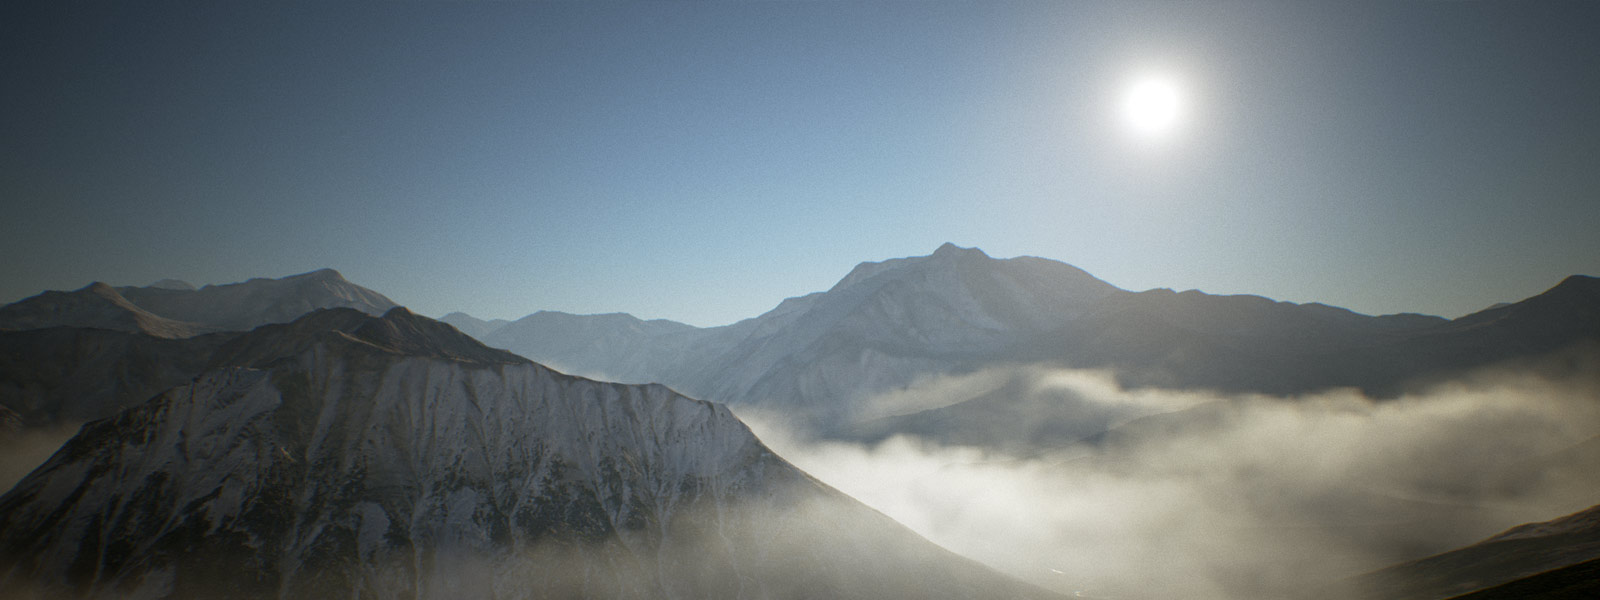 阳光下云雾环绕、覆盖在冰雪下的山脉